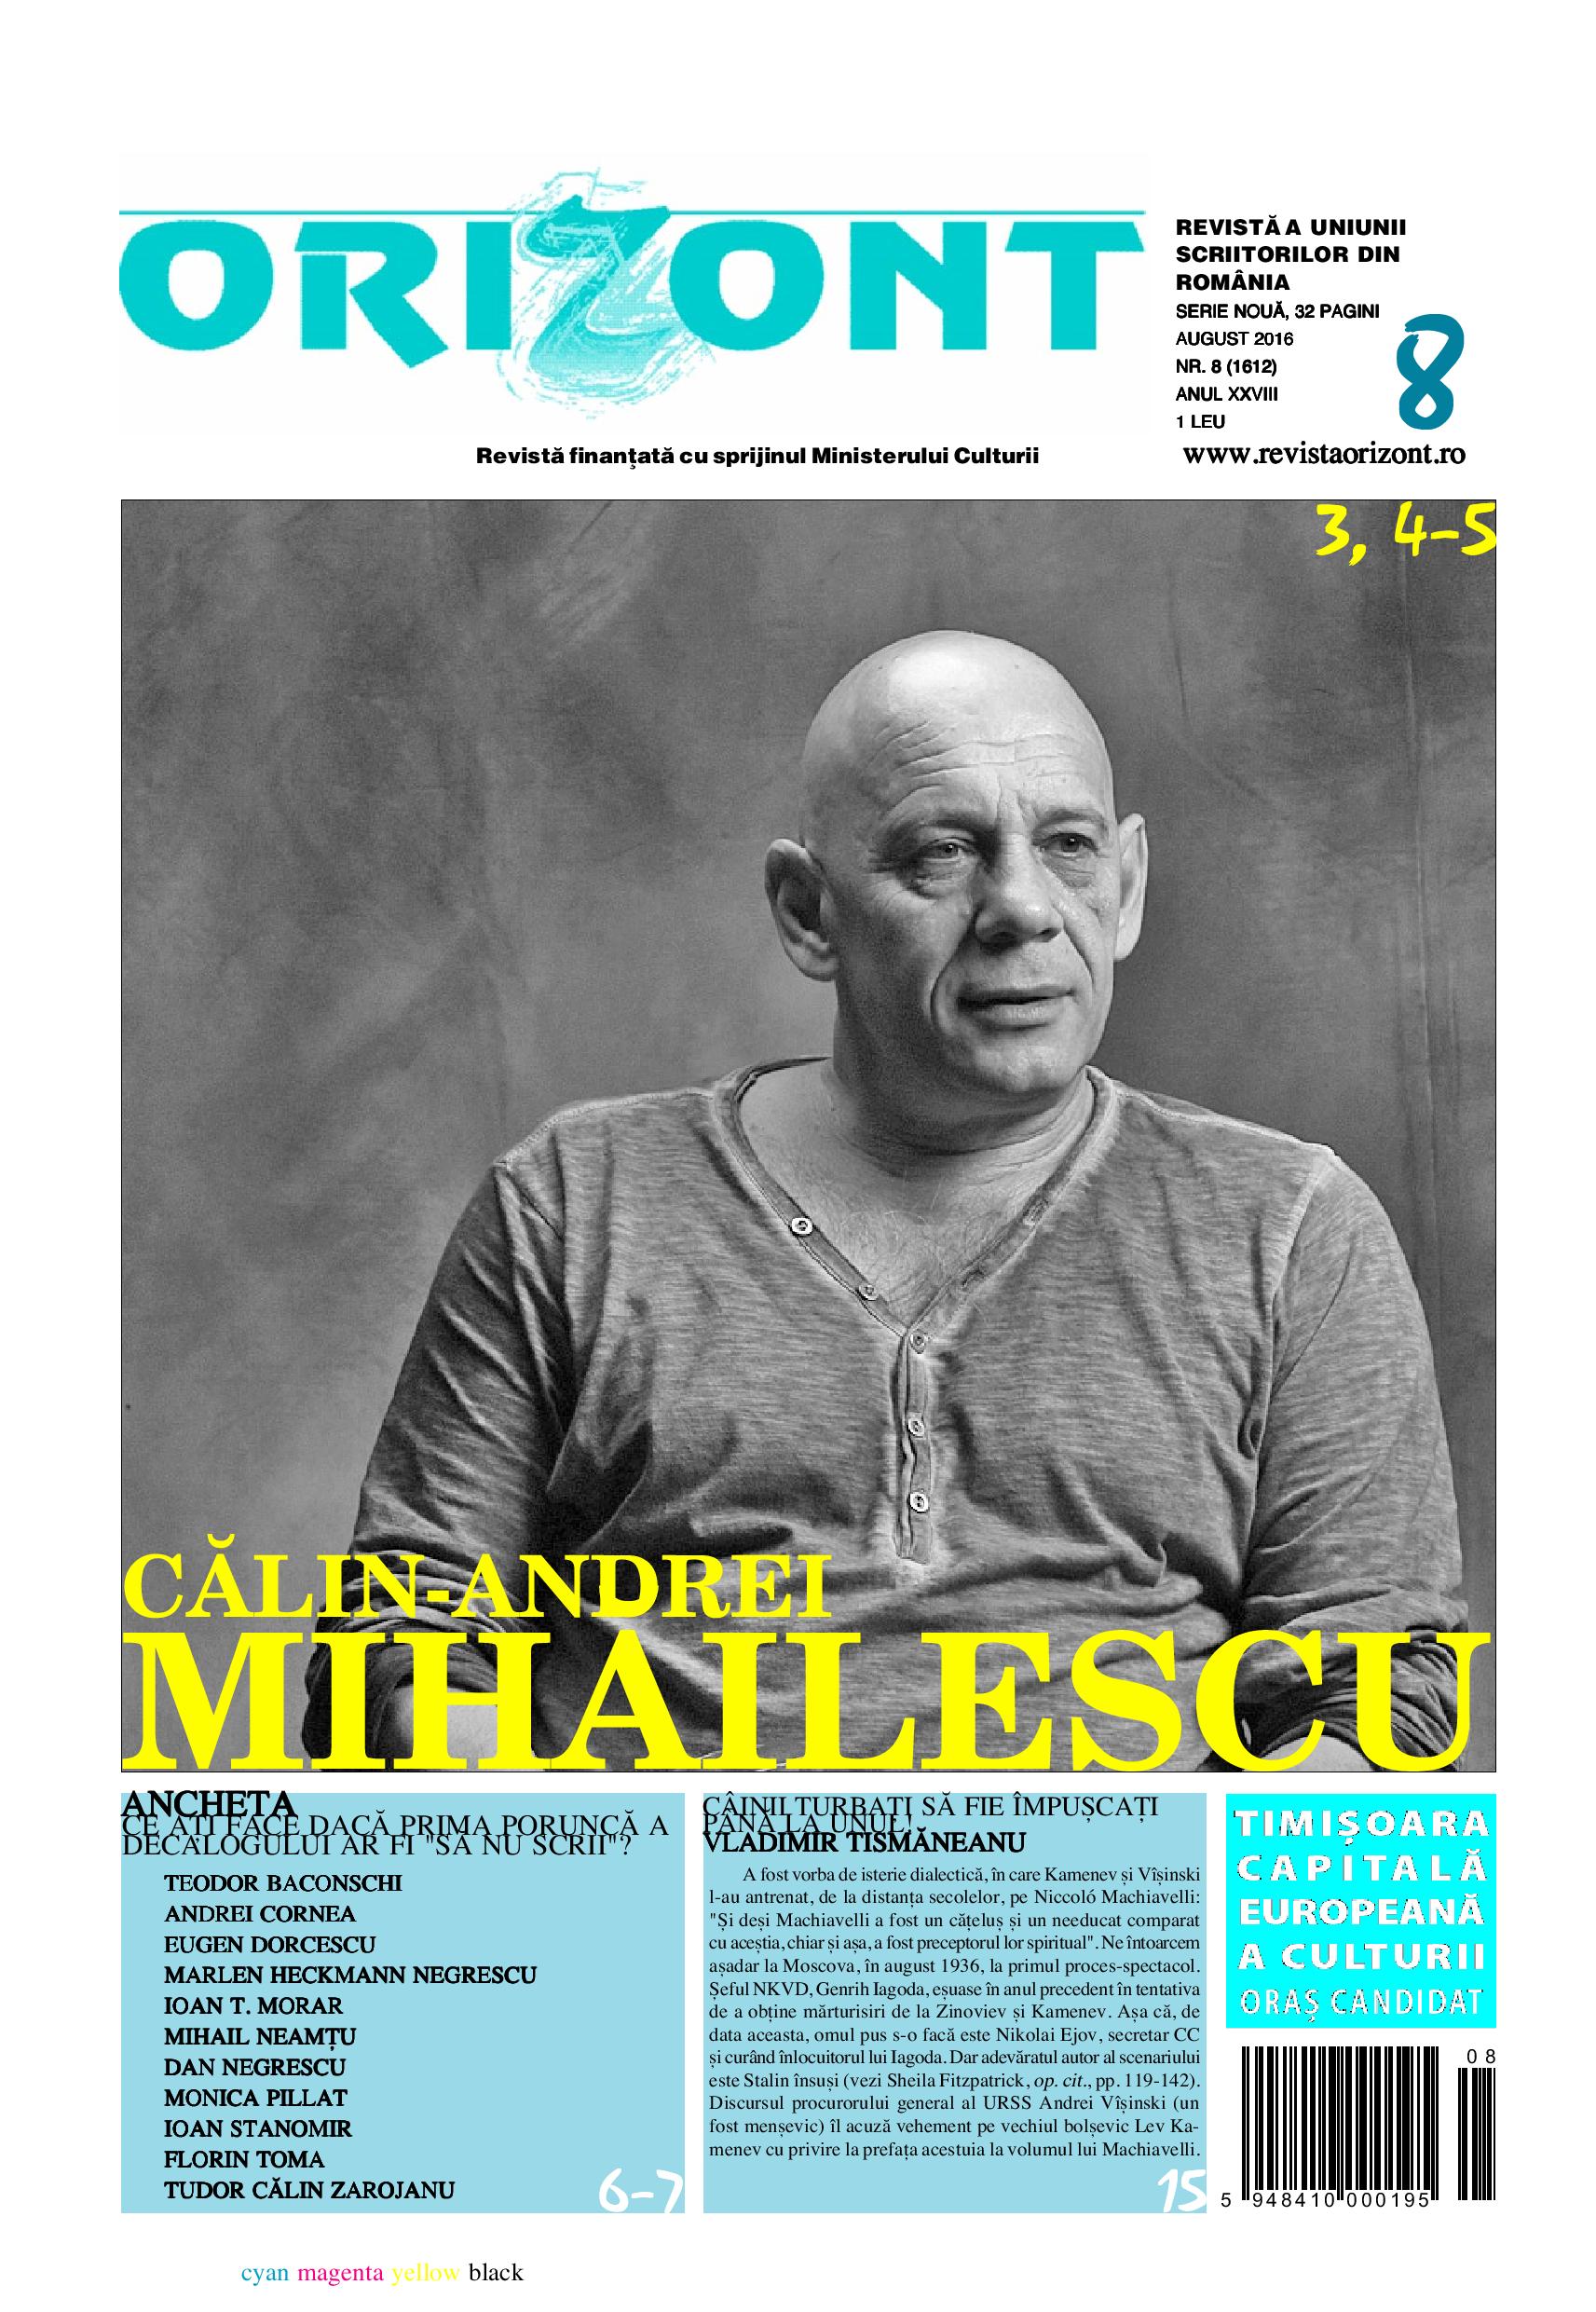 Romanian Studies in Zagreb Cover Image